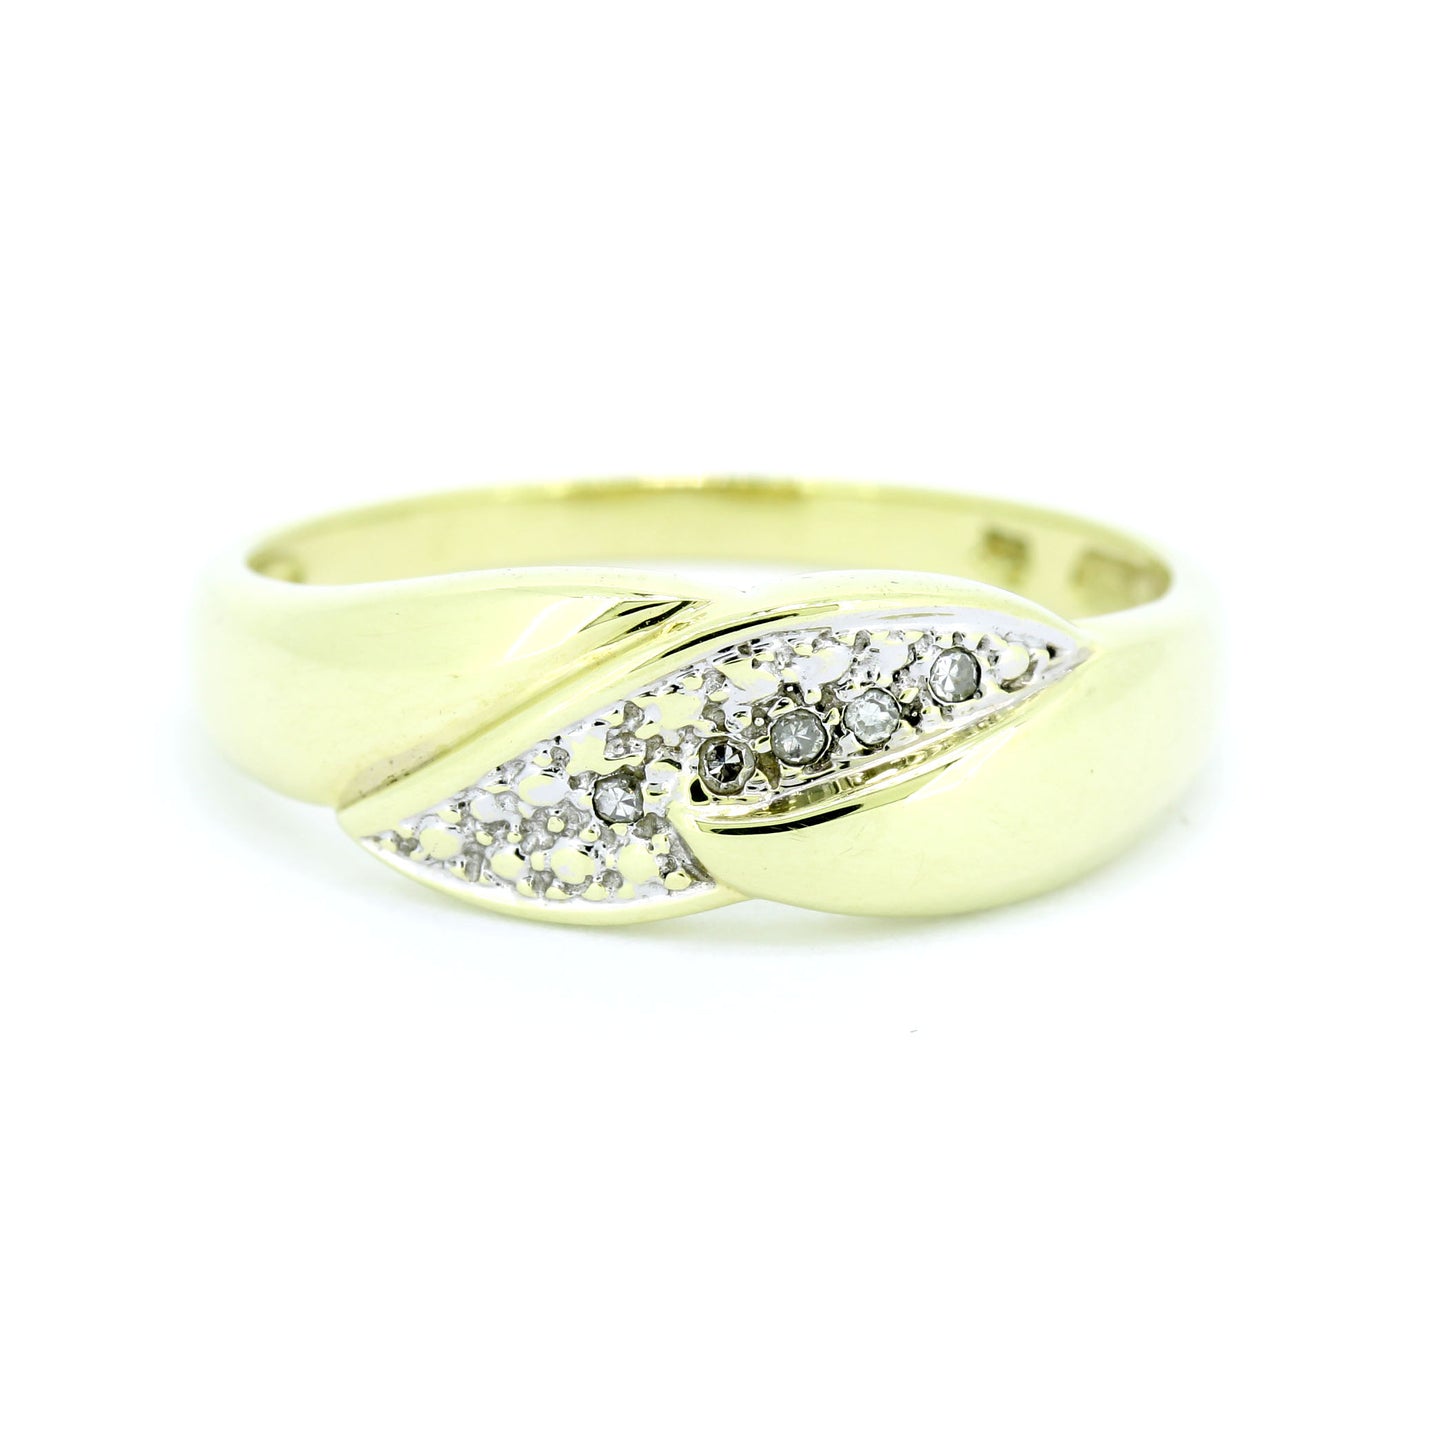 Ring 585 Gold 14 Kt Gelbgold Weißgold Diamanten Wert 430,-